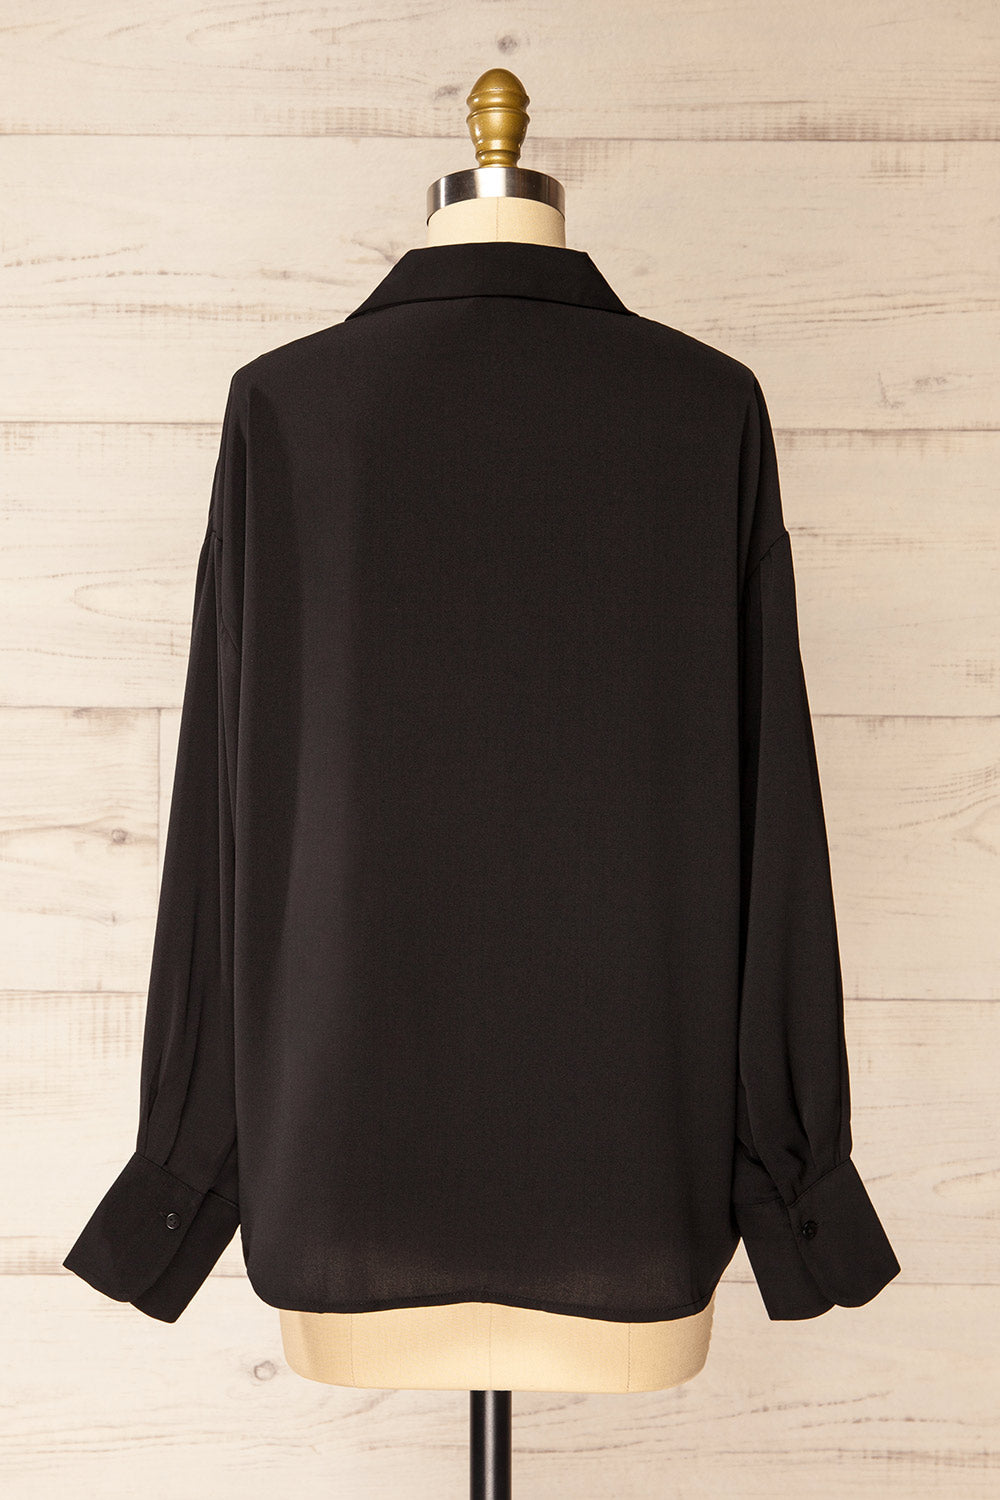 Ejinda Black Relaxed Fit Button-Up Blouse | La petite garçonne back view